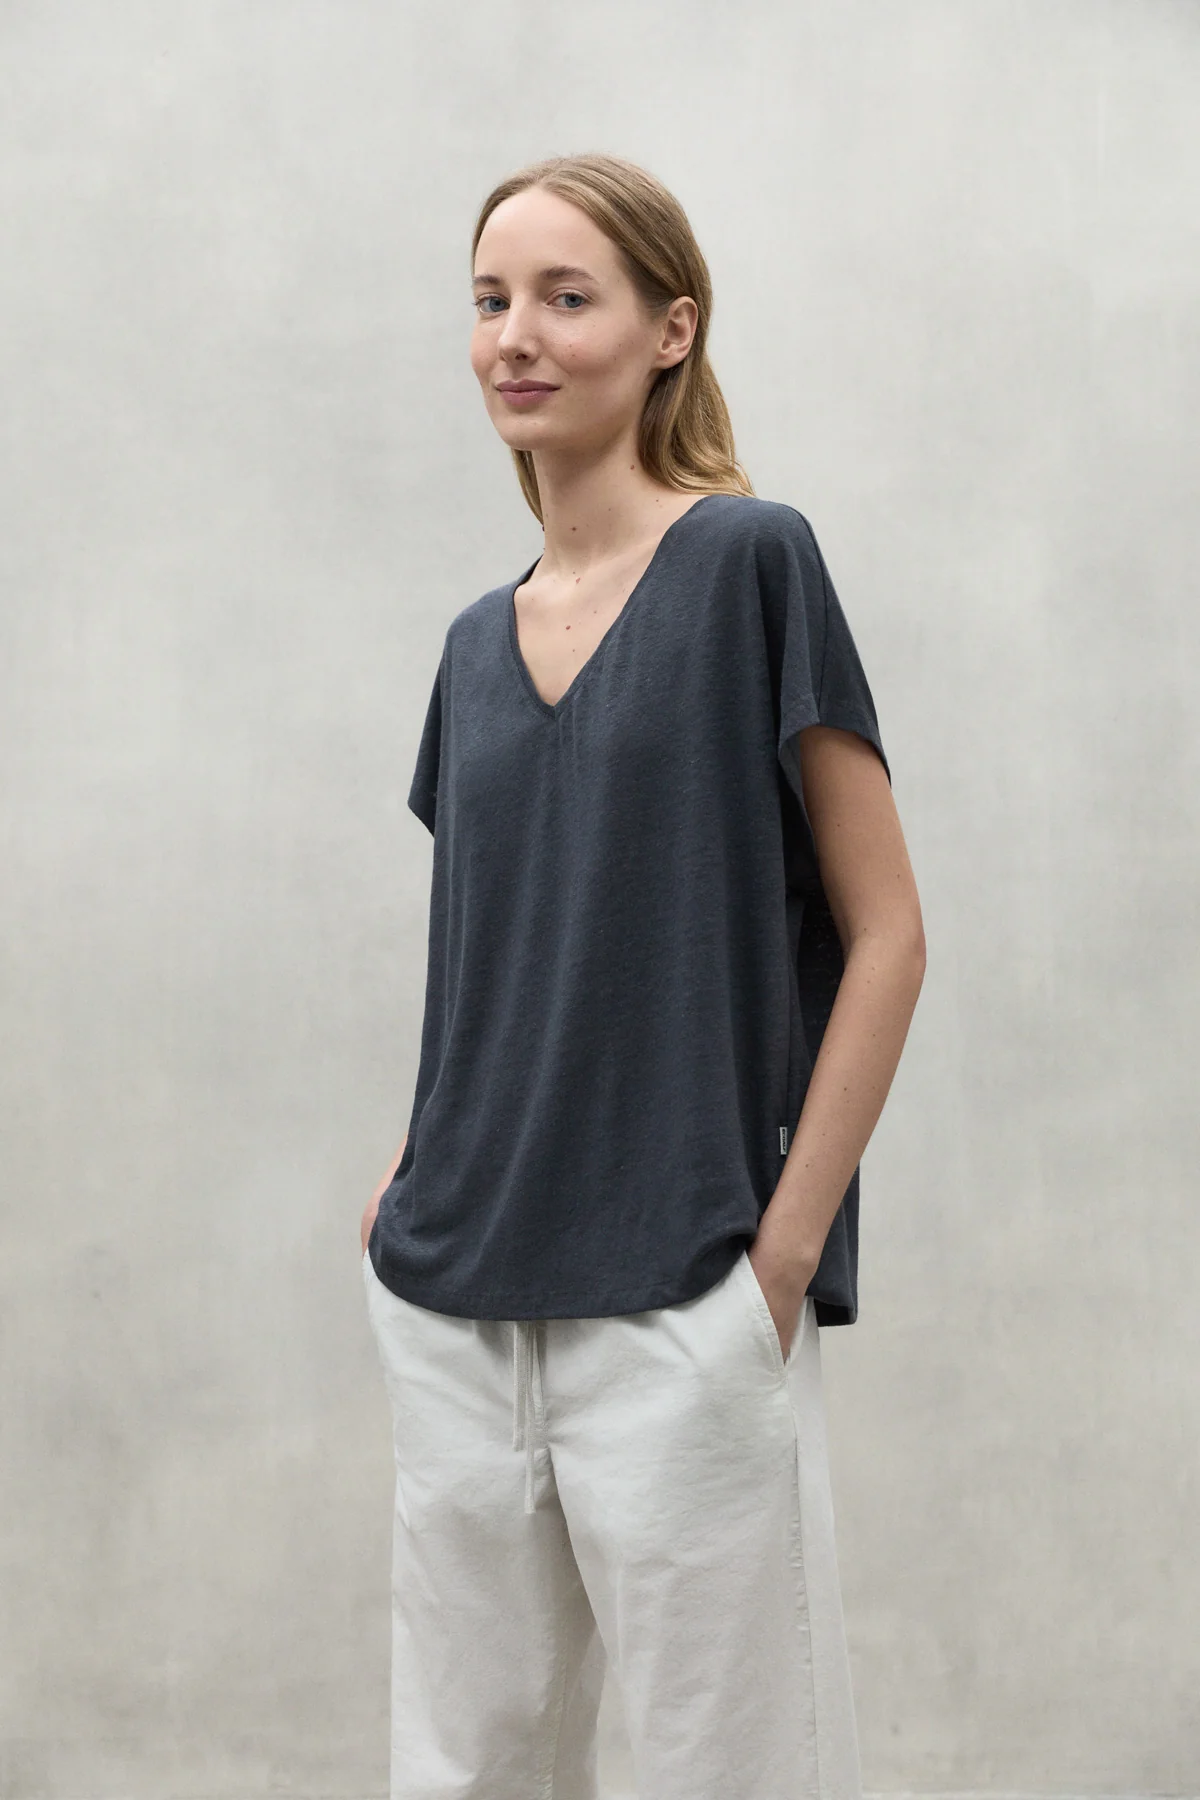 ECOALF camiseta en lino manga corta color gris y escote pico